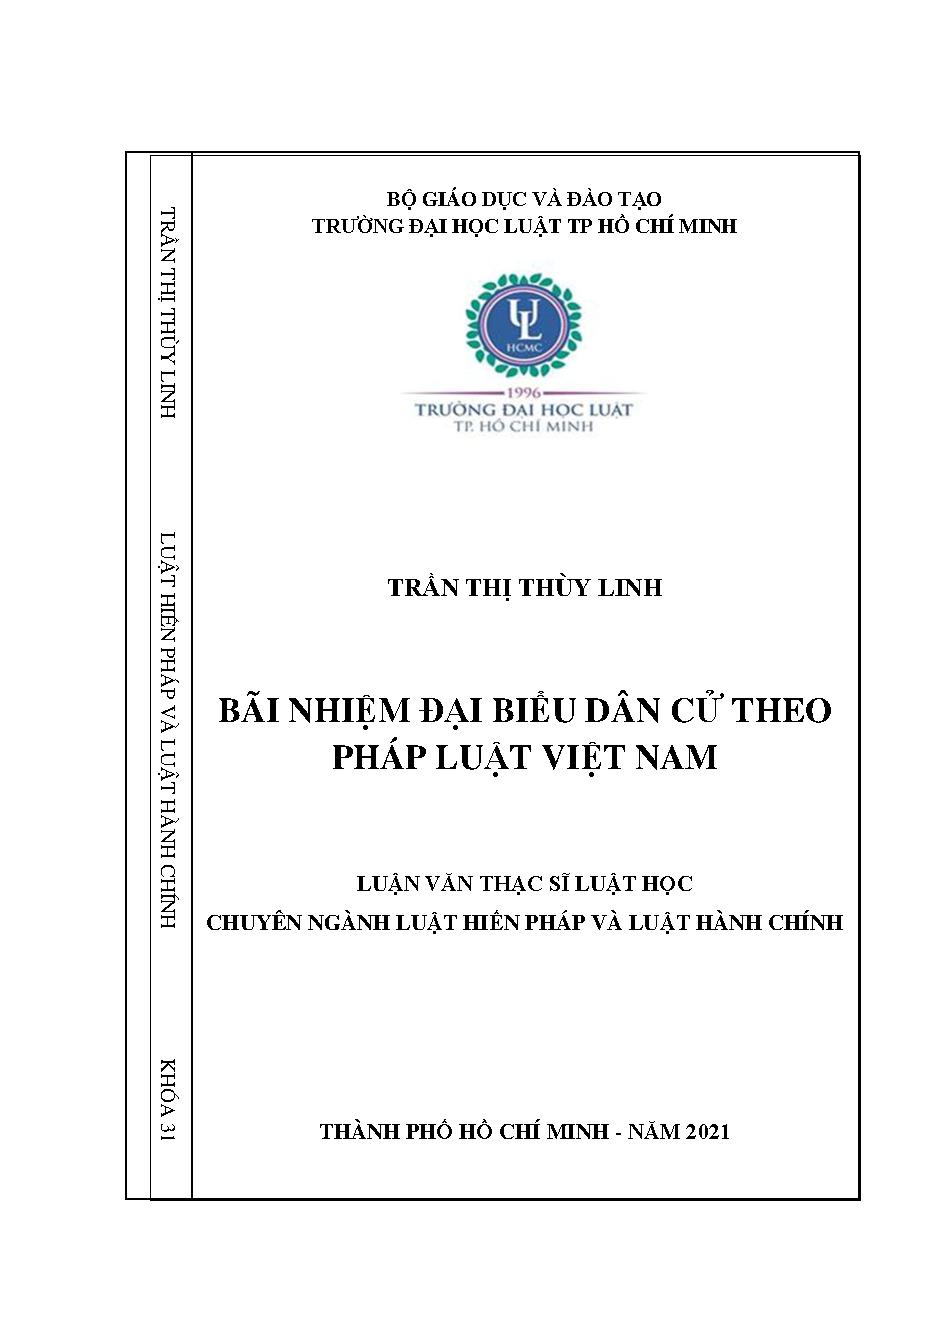 Bãi nhiệm đại biểu dân cử theo pháp luật Việt Nam